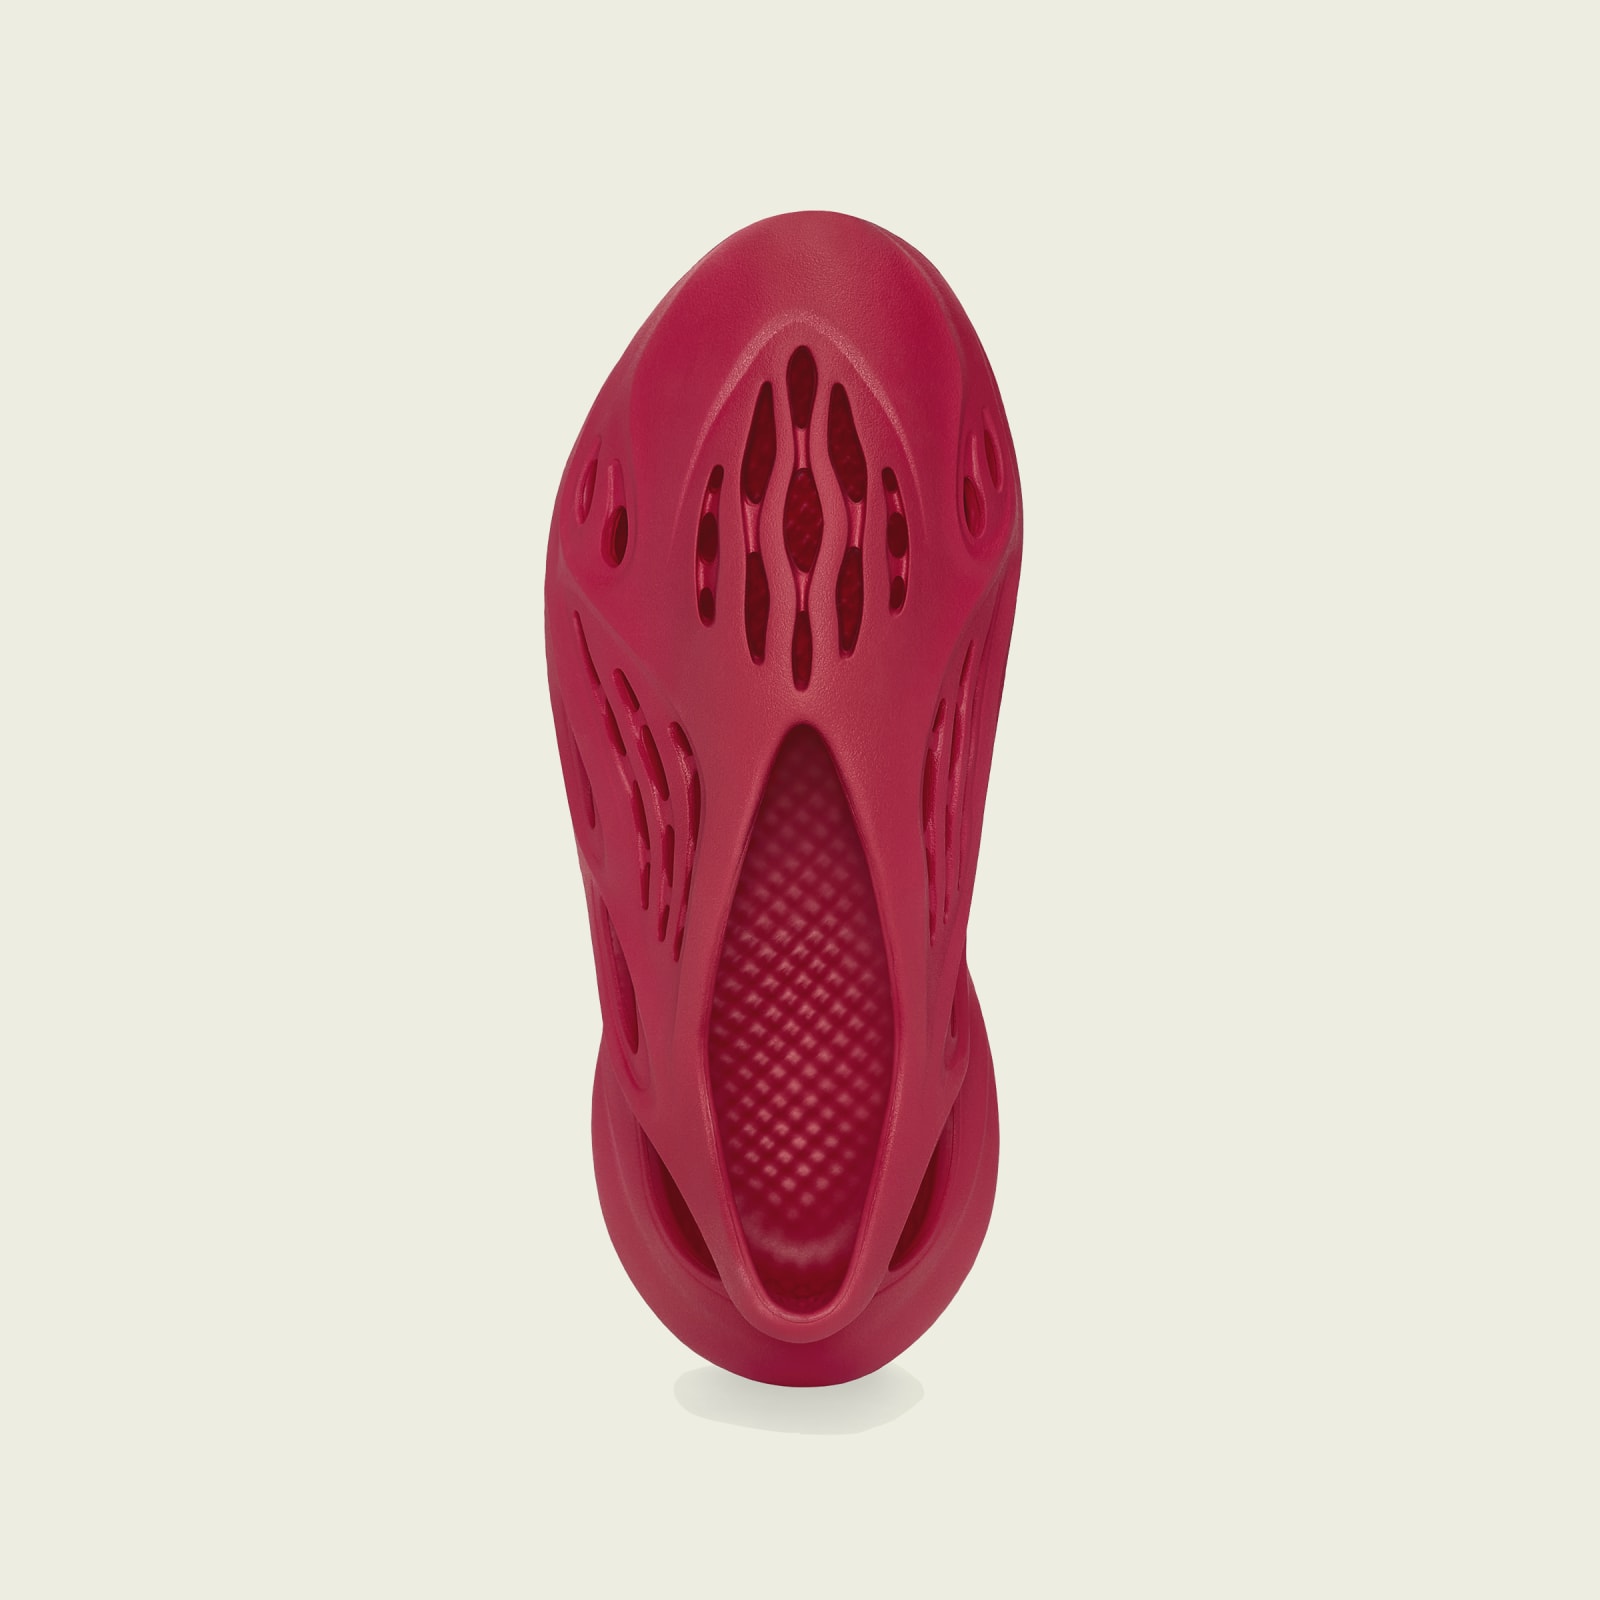 Adidas Yeezy Foam Runner
« Vermillion »